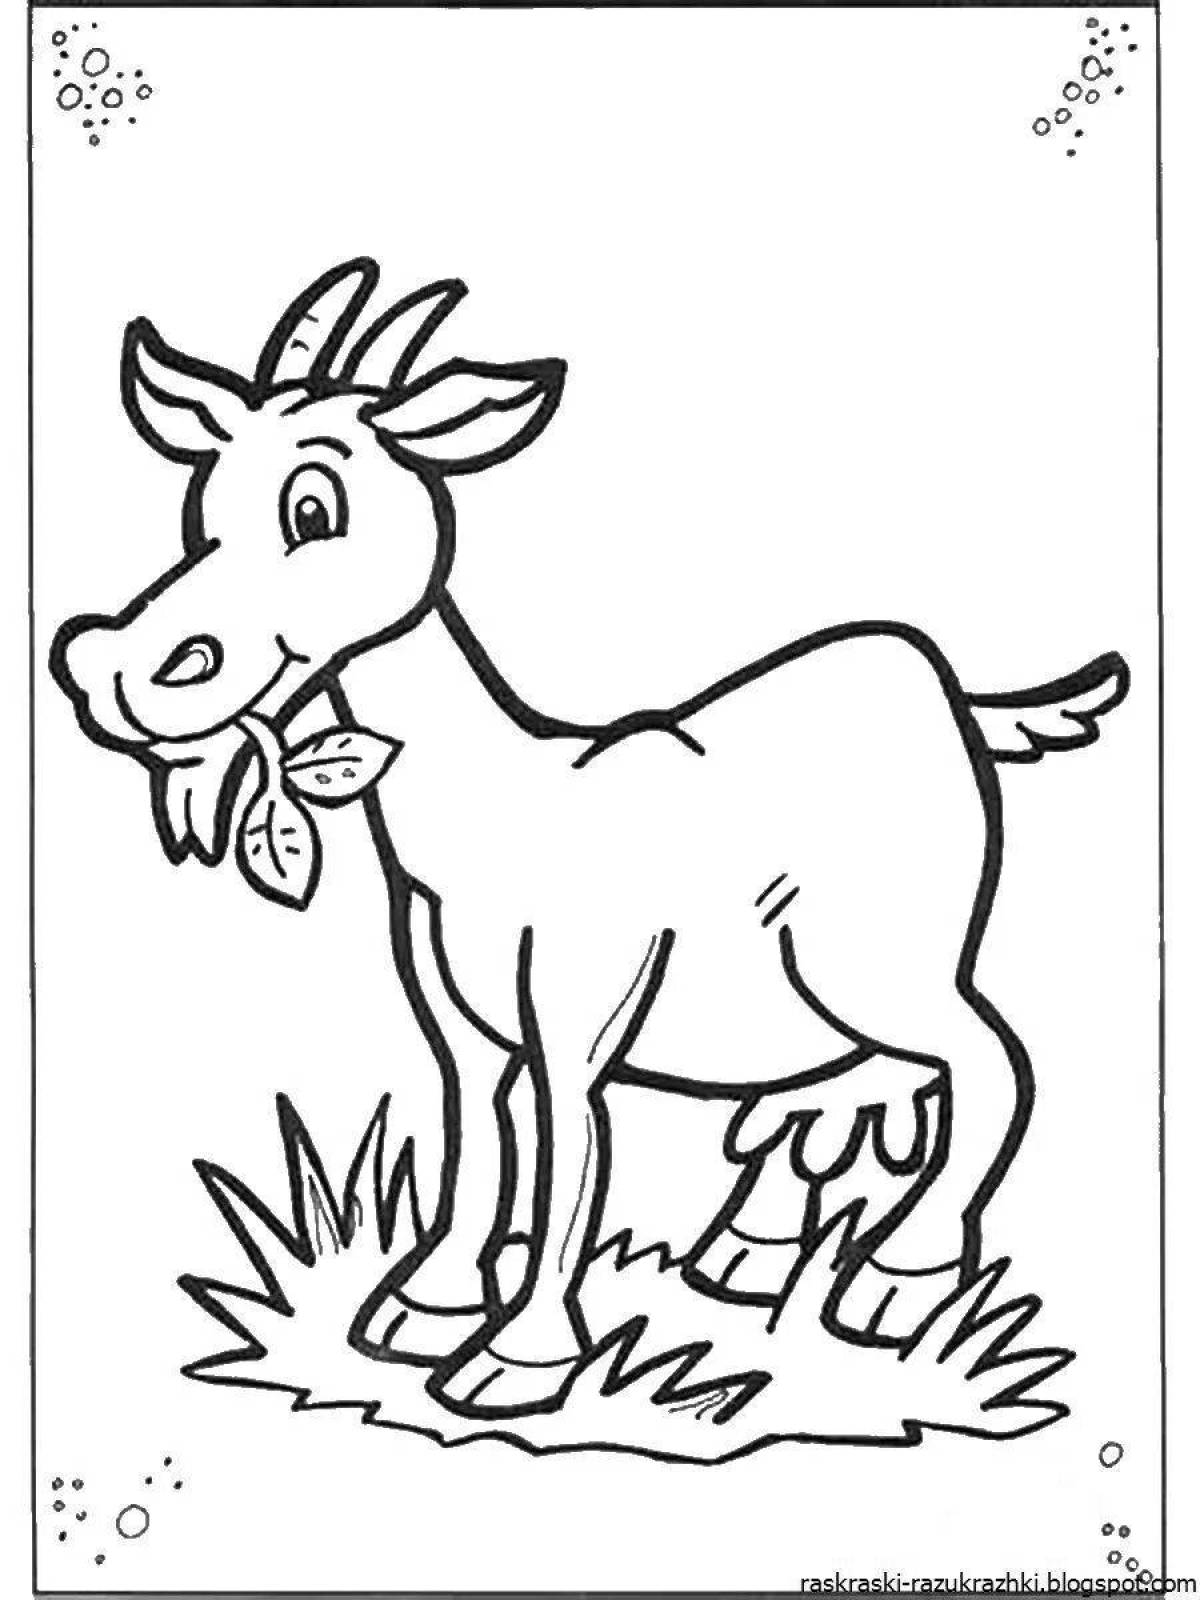 Раскраска очаровательная коза для детей 5-6 лет